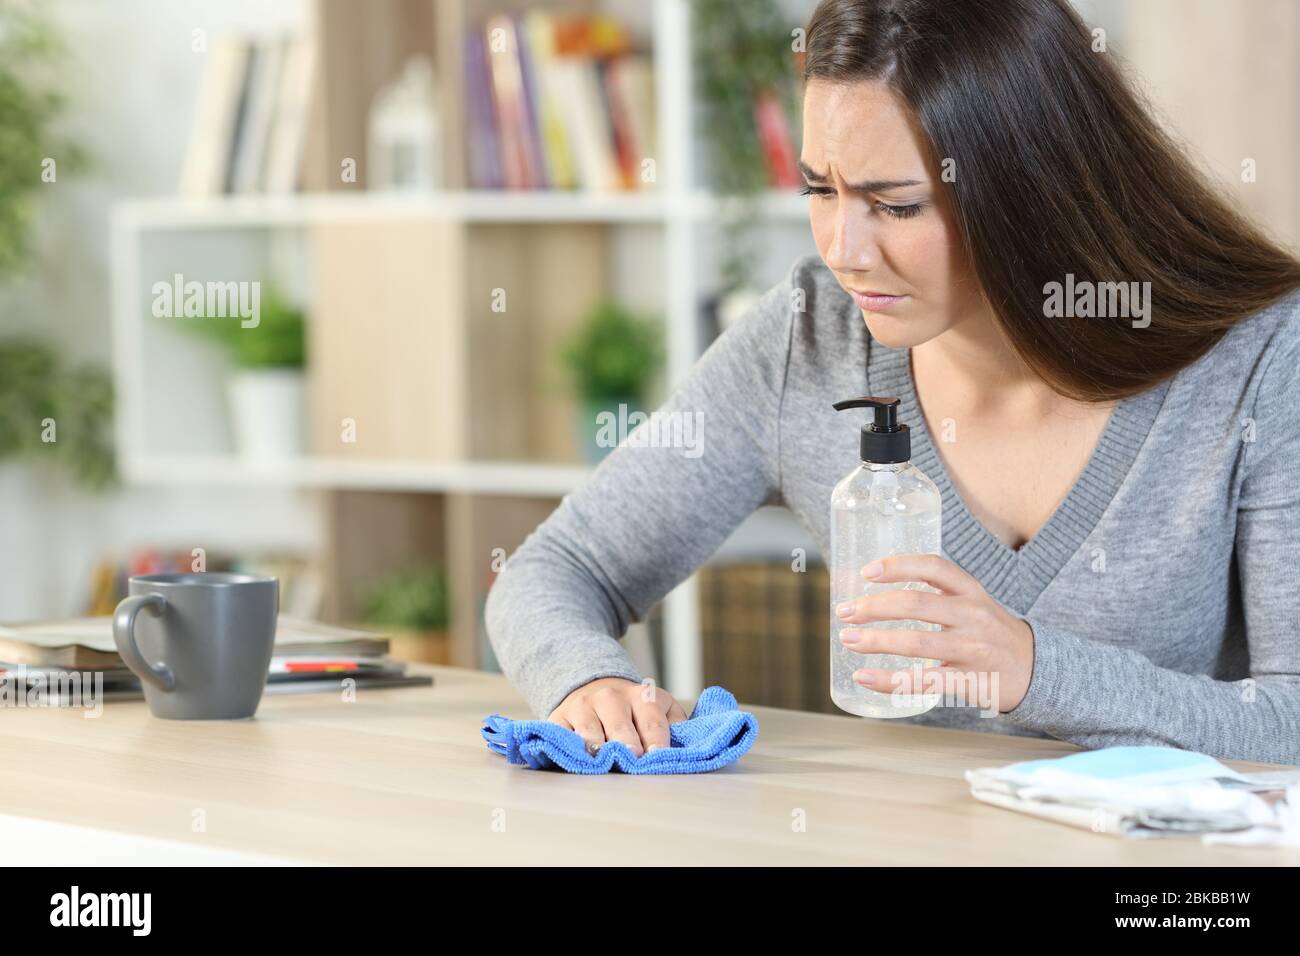 Besorgte Frau, die den Schreibtisch mit Desinfektionsmittel und Tuch reinigt und Ansteckungen vermeidet, die zu Hause auf einem Schreibtisch sitzen Stockfoto